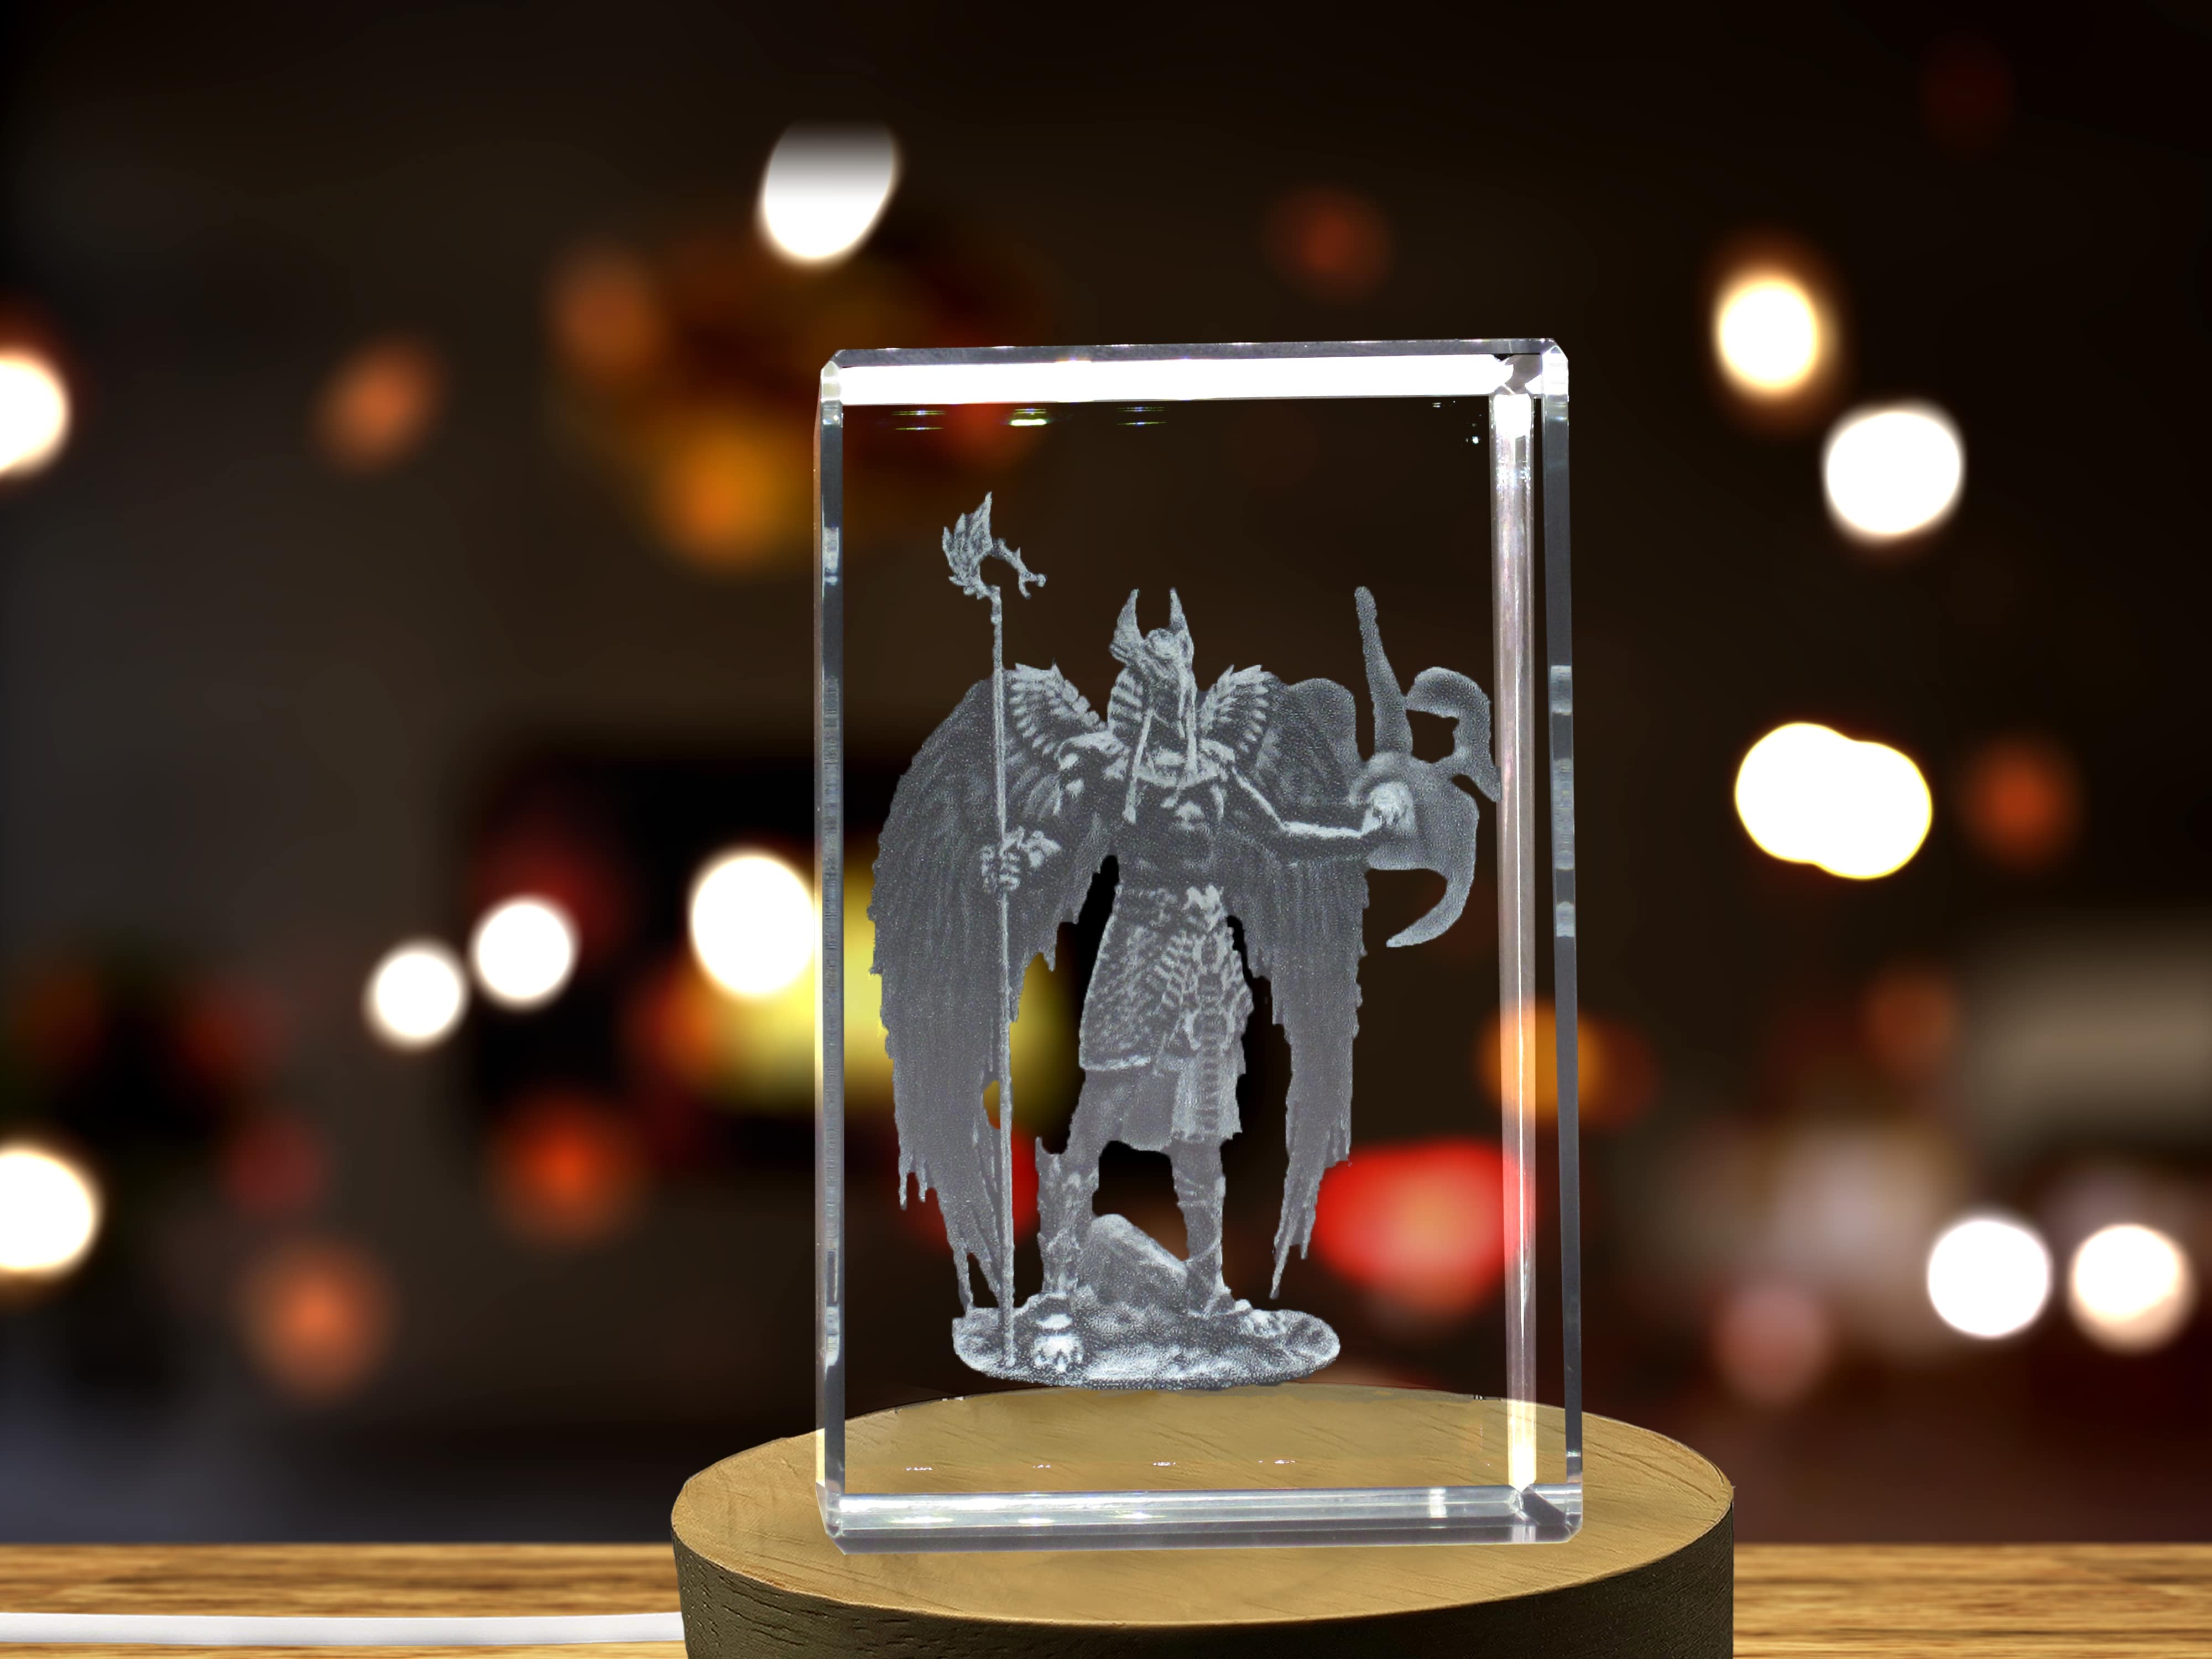 Horus 3D Engraved Crystal 3D Engraved Crystal Keepsake/Gift/Decor/Collectible/Souvenir A&B Crystal Collection